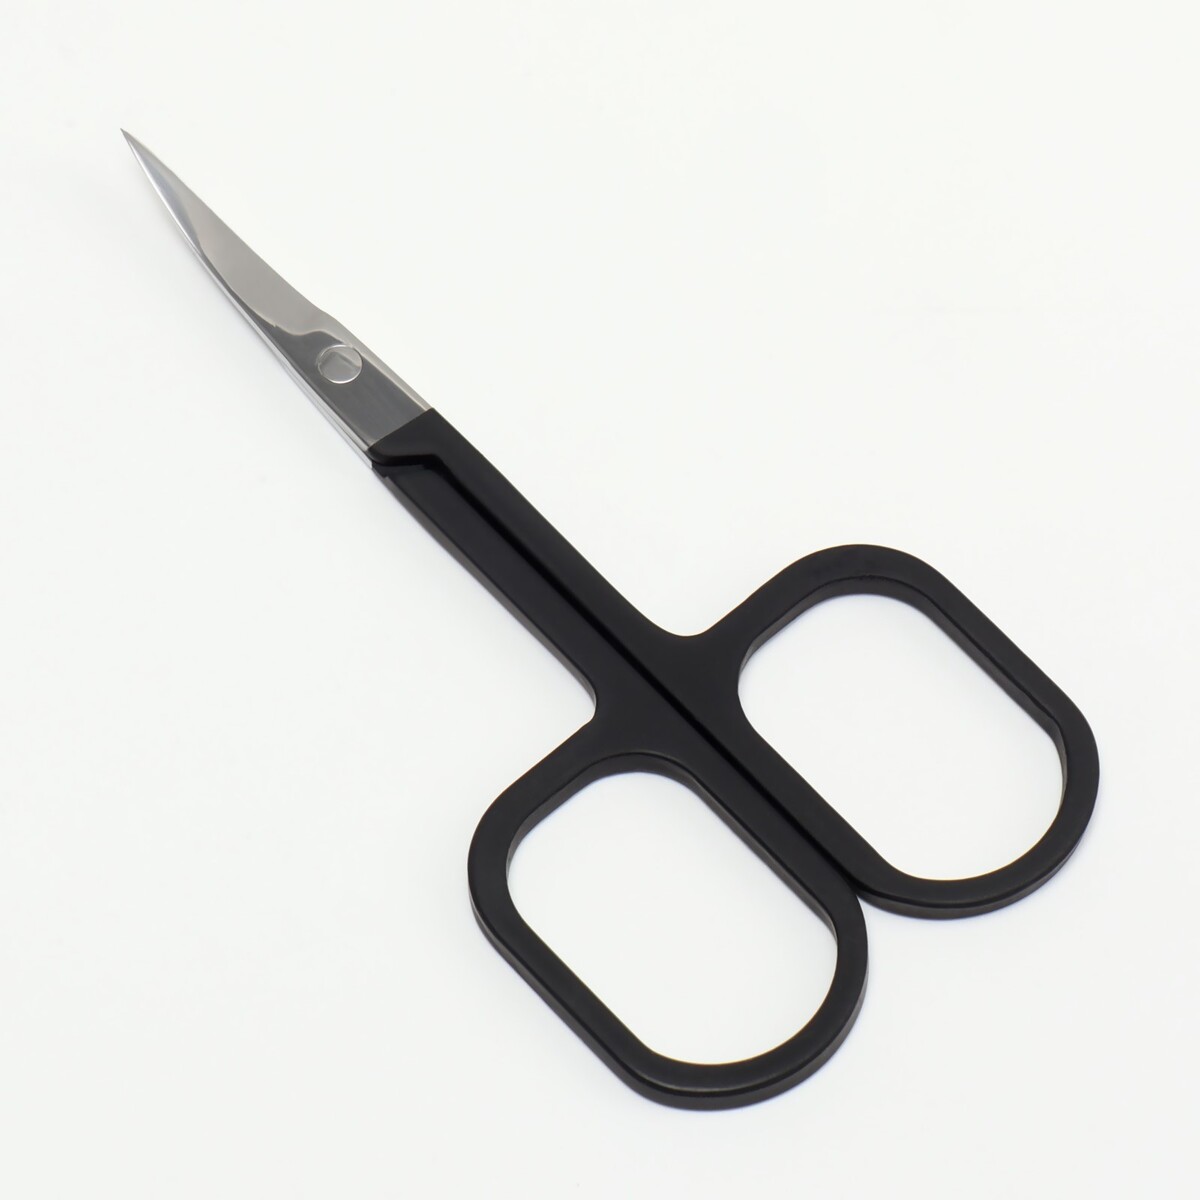 Ножницы маникюрные, узкие, загнутые, с прорезиненными ручками, 9 см, цвет серебристый/черный щипцы пробойник с прорезиненными ручками 25 × 9 см